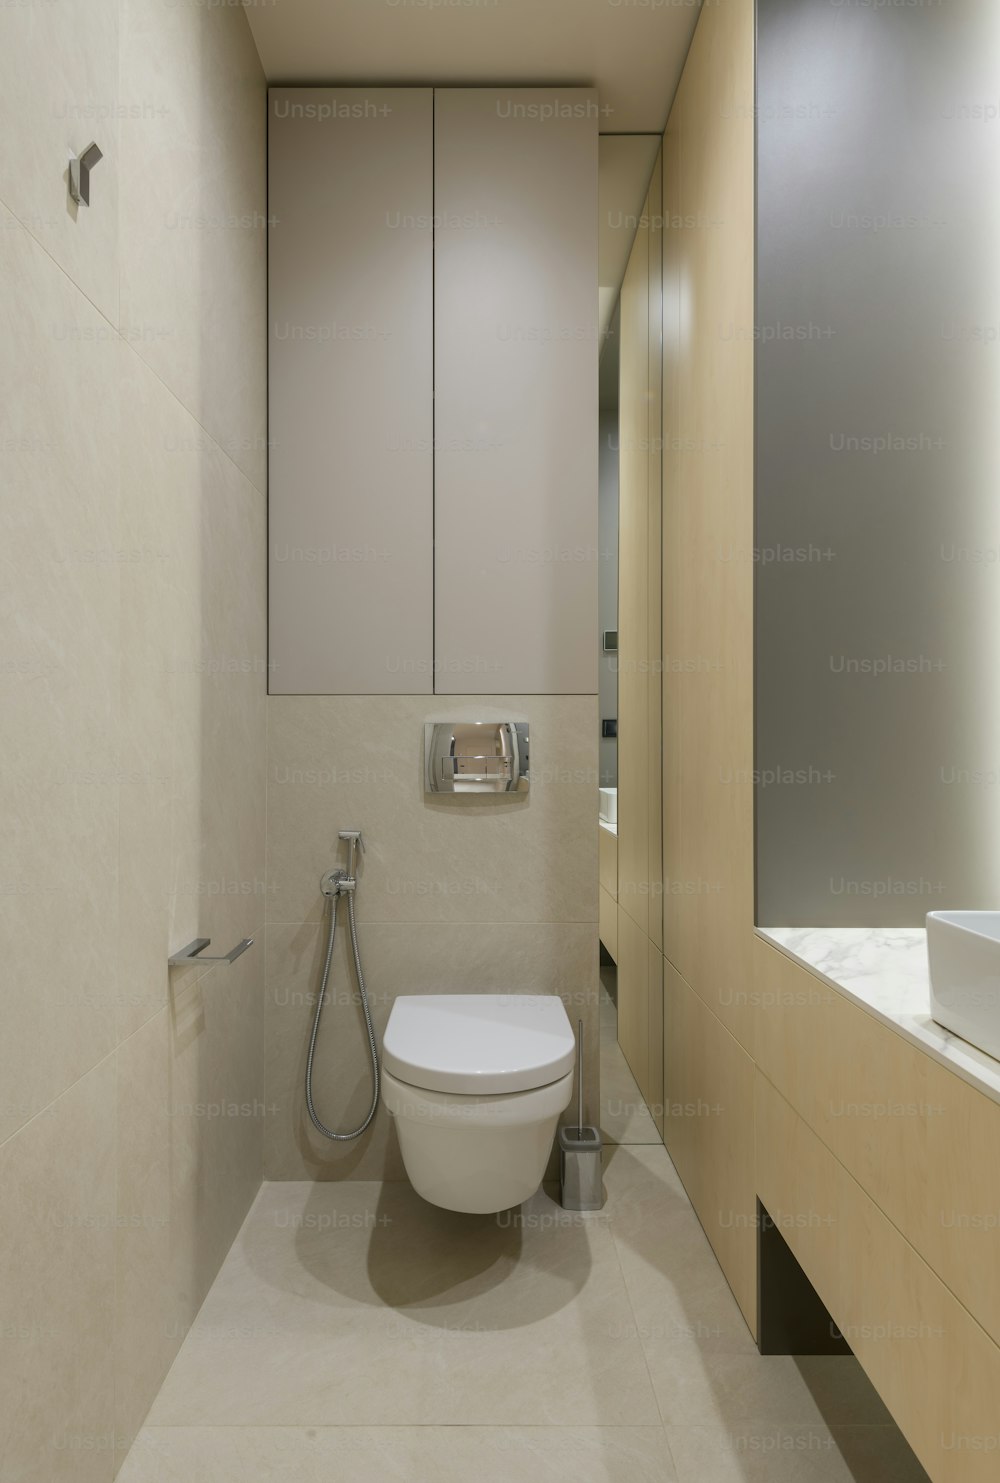 une toilette blanche assise dans une salle de bain à côté d’un lavabo